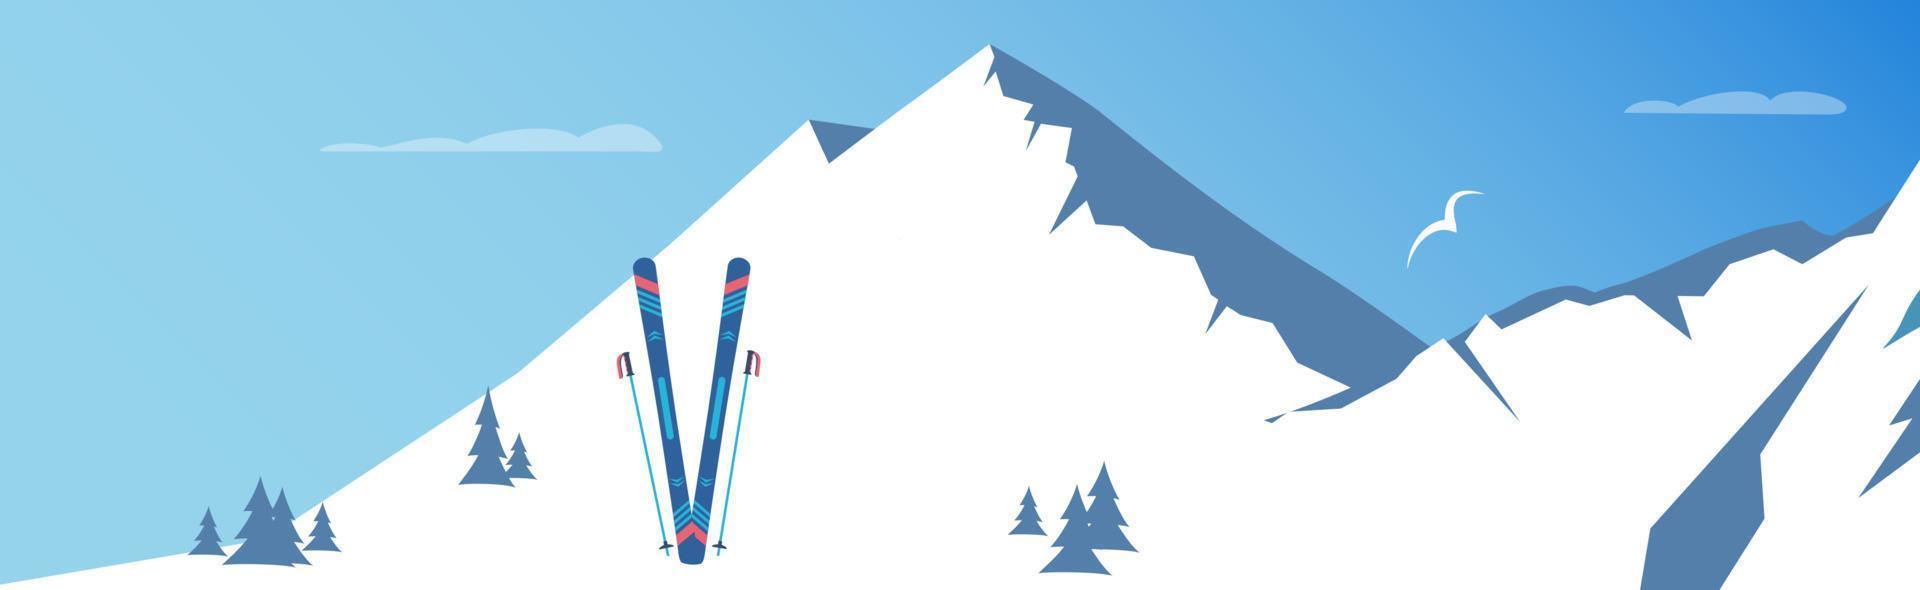 esquí y montañas nevadas. deporte de invierno. ilustración vectorial vector